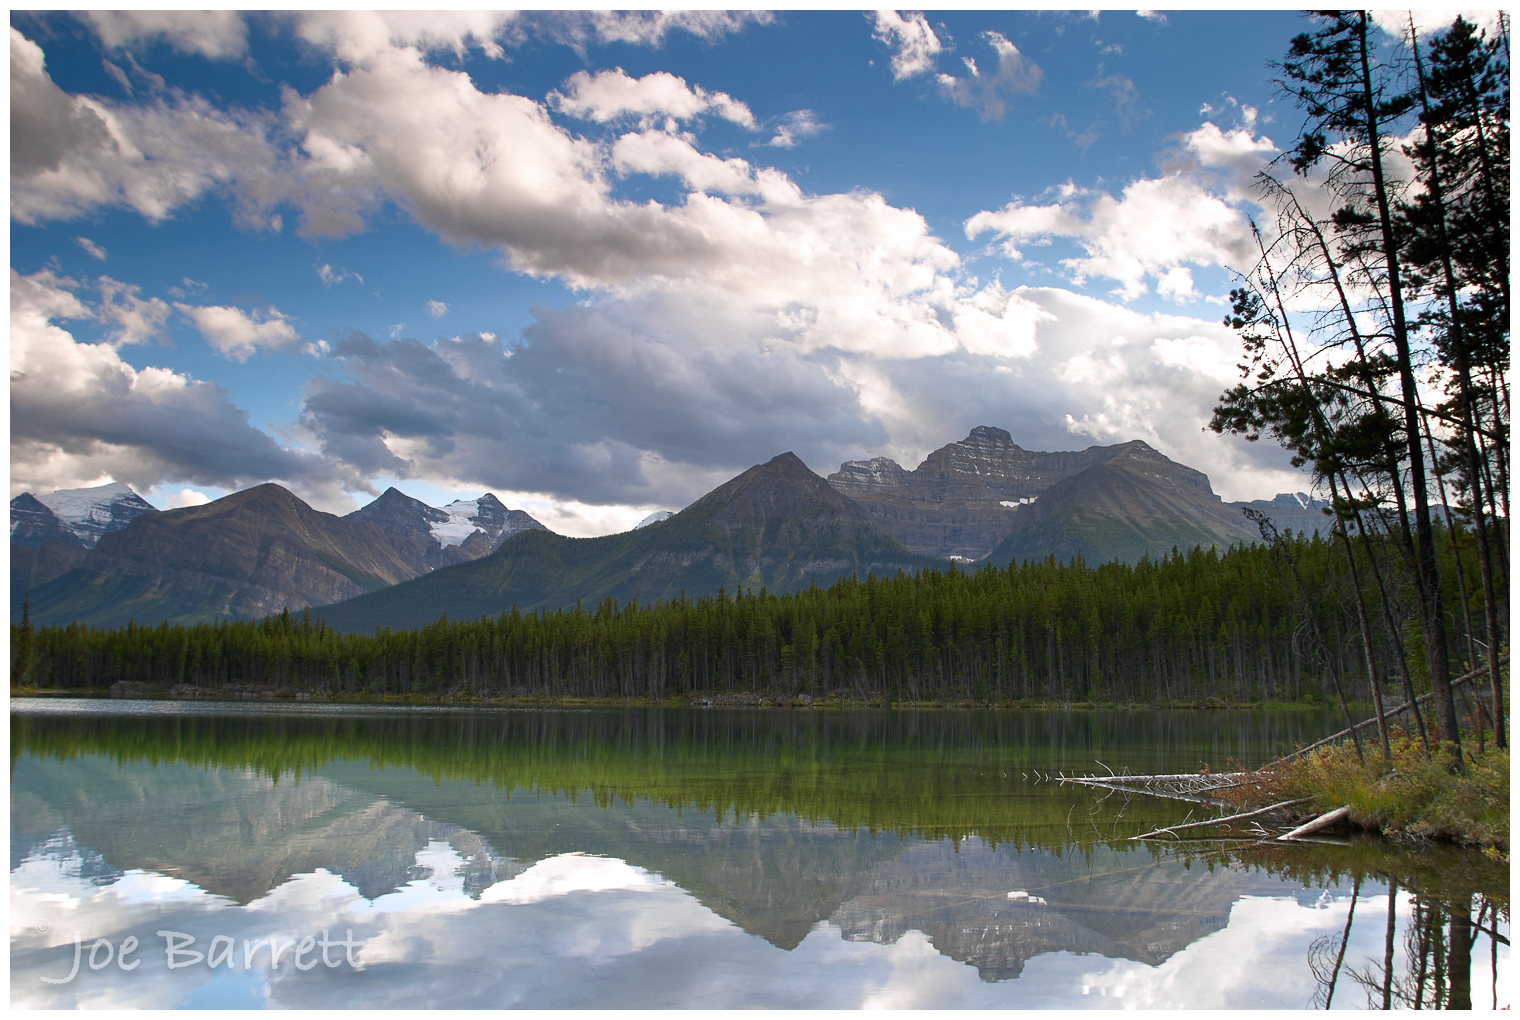  Herbert Lake, Canadian Rockies.  